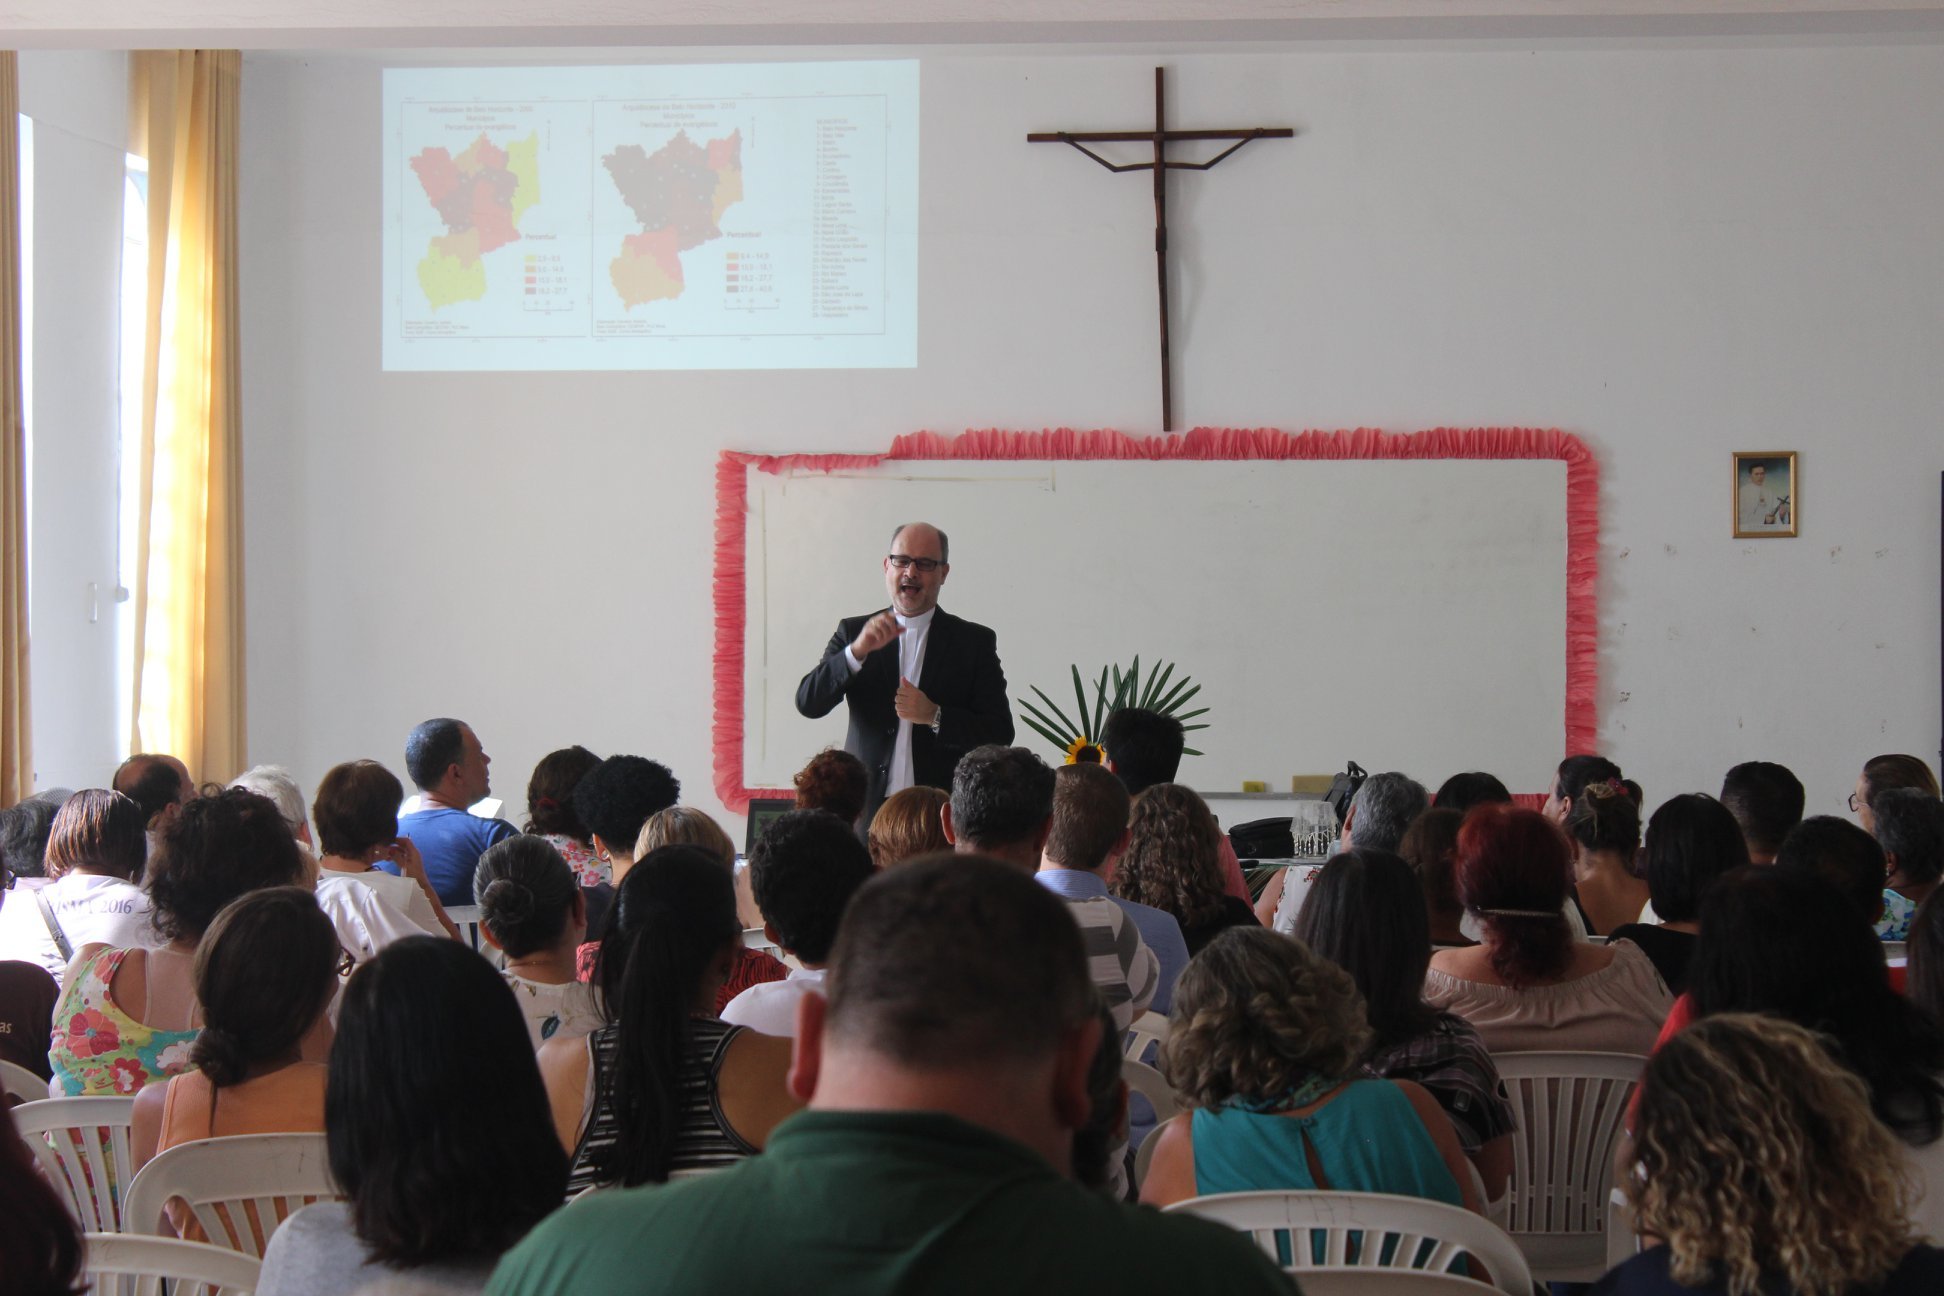 Rense: Fórum Missionário das Vilas e Favelas reúne grupo para manhã de formação